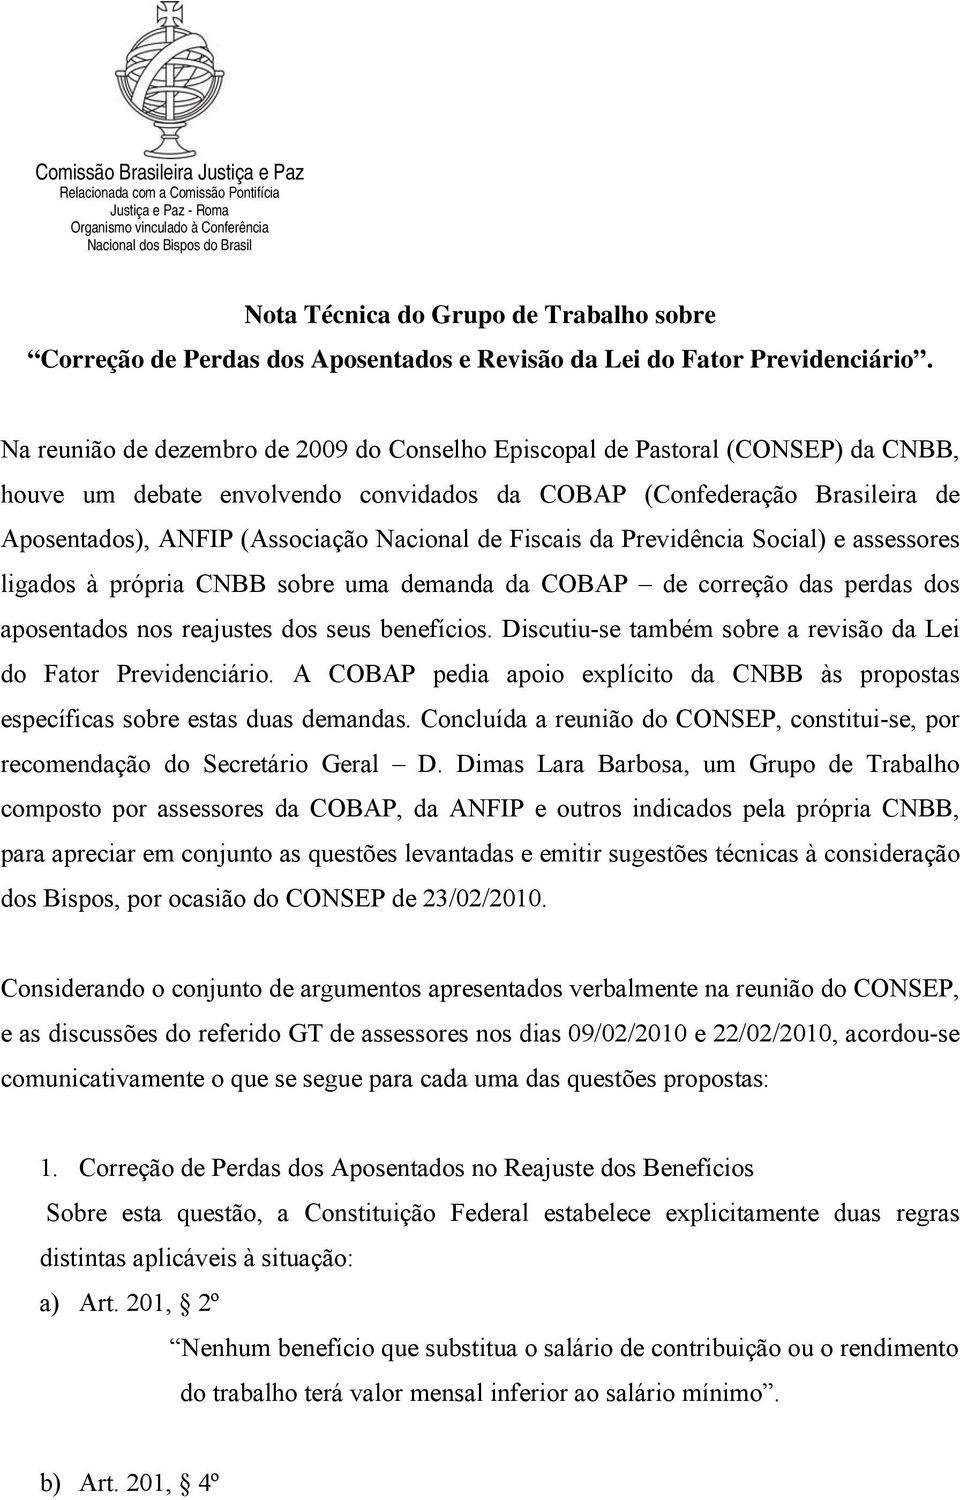 Na reunião de dezembro de 2009 do Conselho Episcopal de Pastoral (CONSEP) da CNBB, houve um debate envolvendo convidados da COBAP (Confederação Brasileira de Aposentados), ANFIP (Associação Nacional